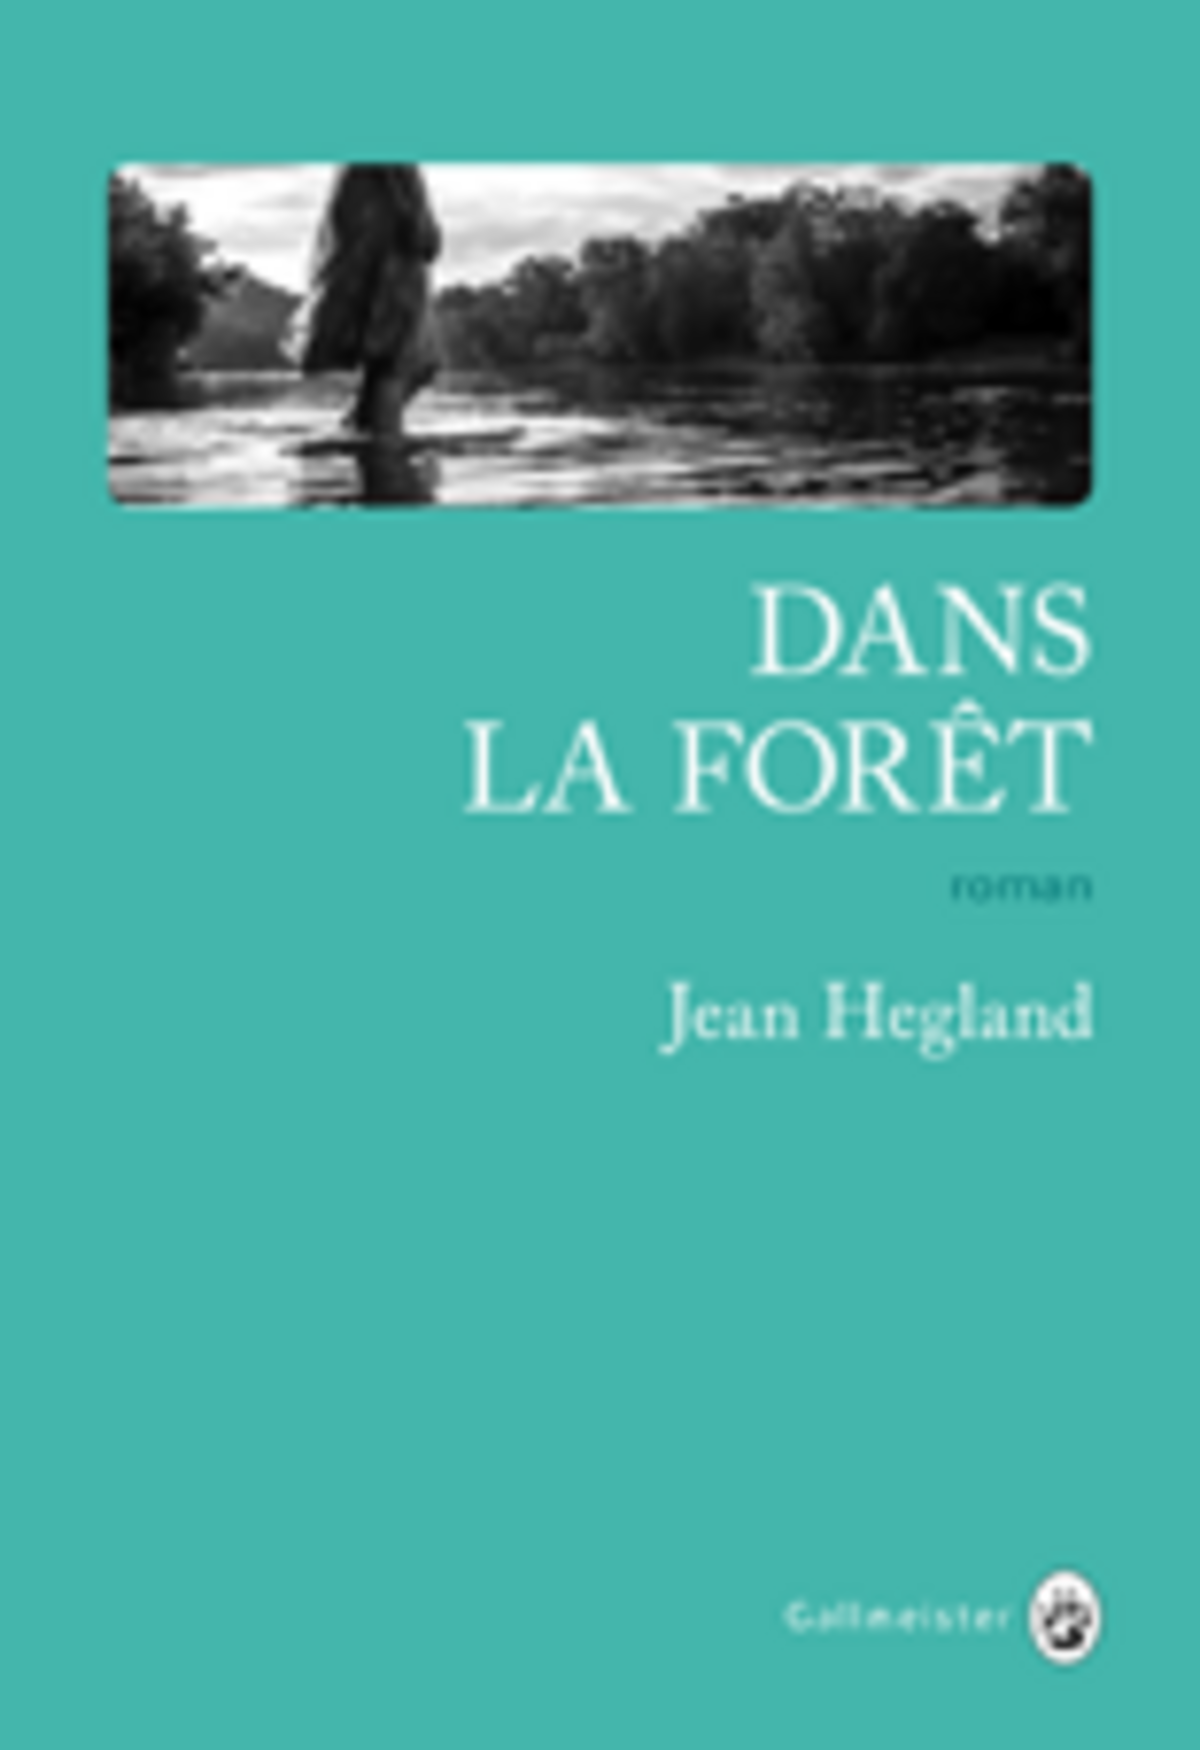 Dans la forêt de Jean Hegland - Blog Lettres & caractères